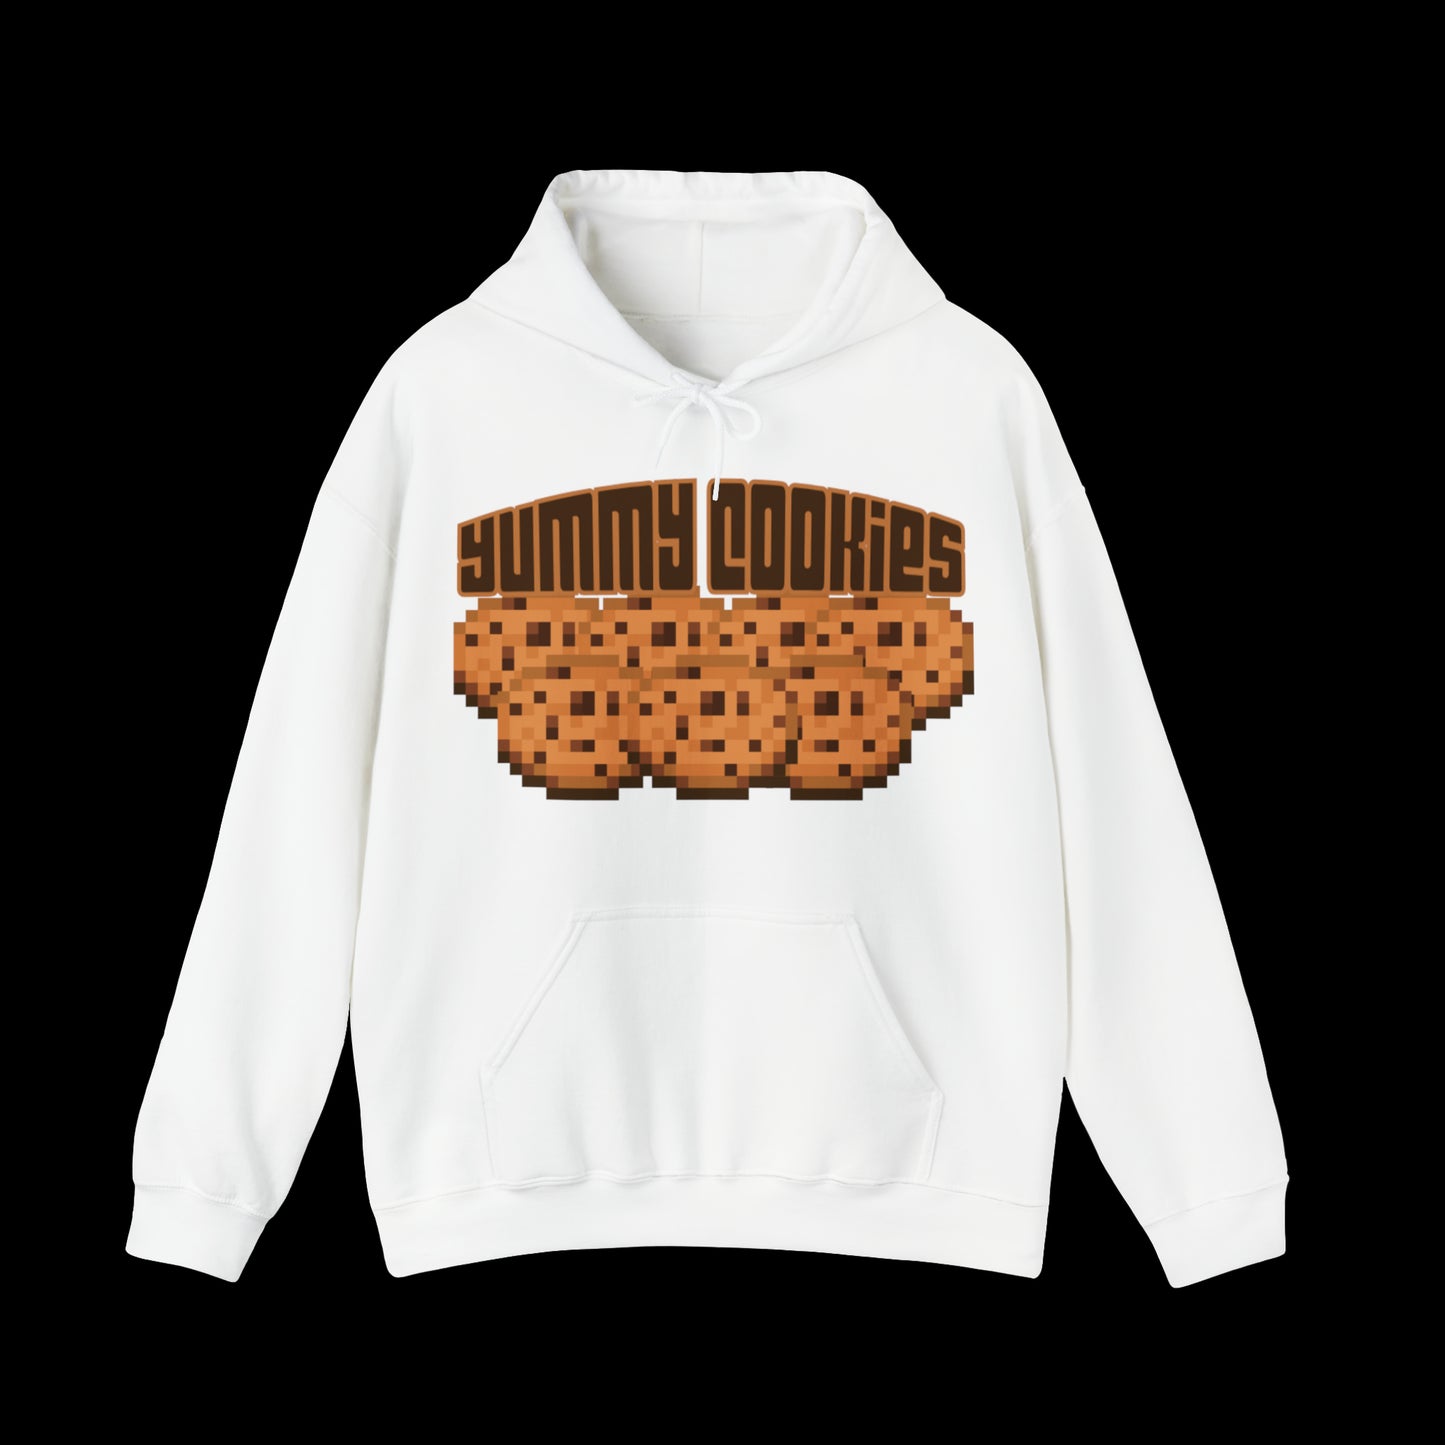 Yummy Cookies Hooded Sweatshirt